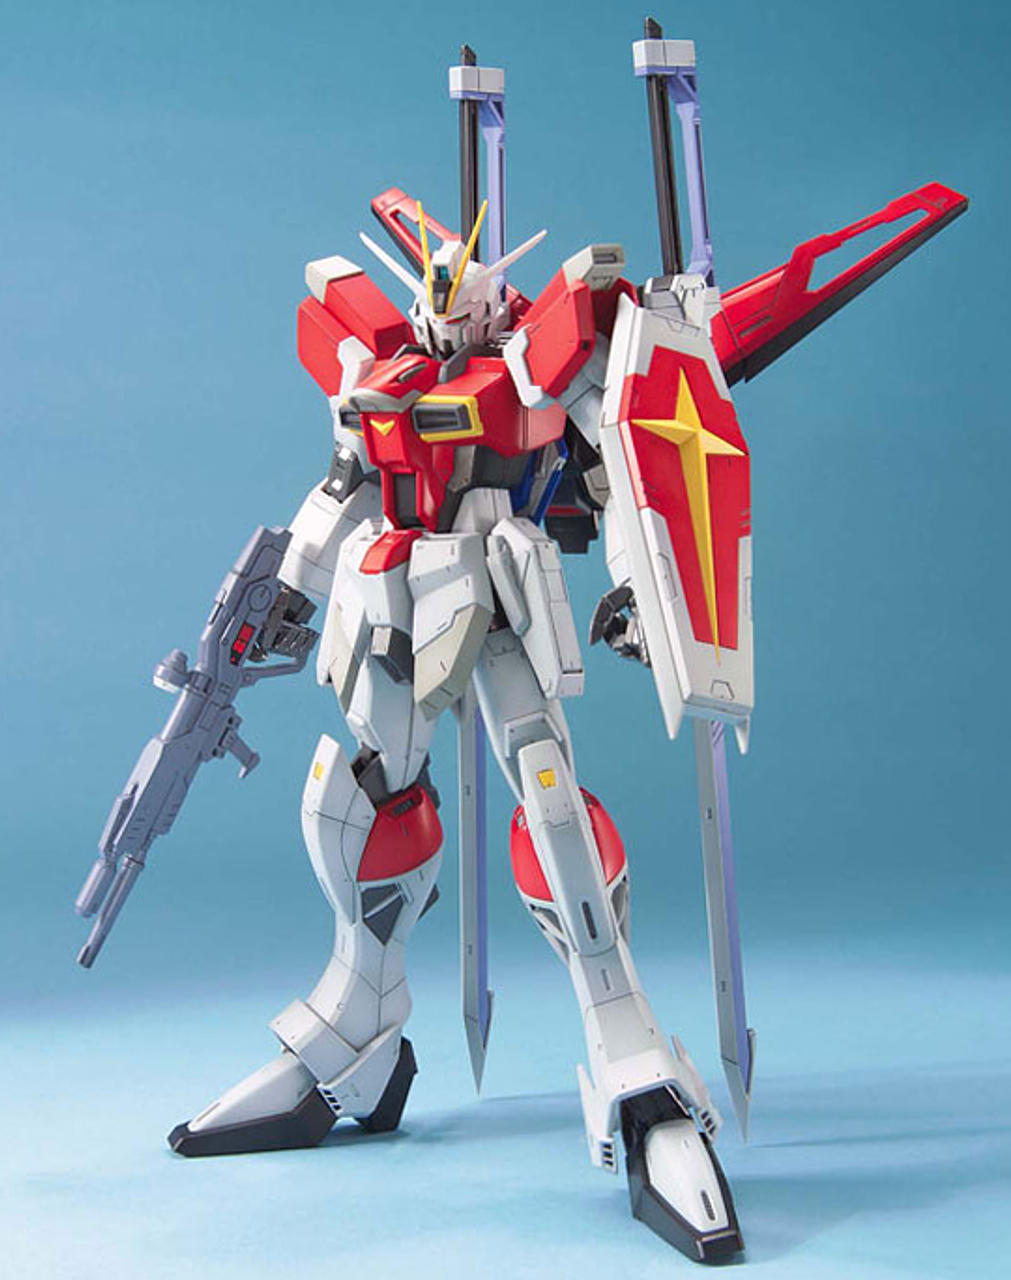 1/100 MG Sword Impulse Gundam - Japan Cool - Gundam Model Kits